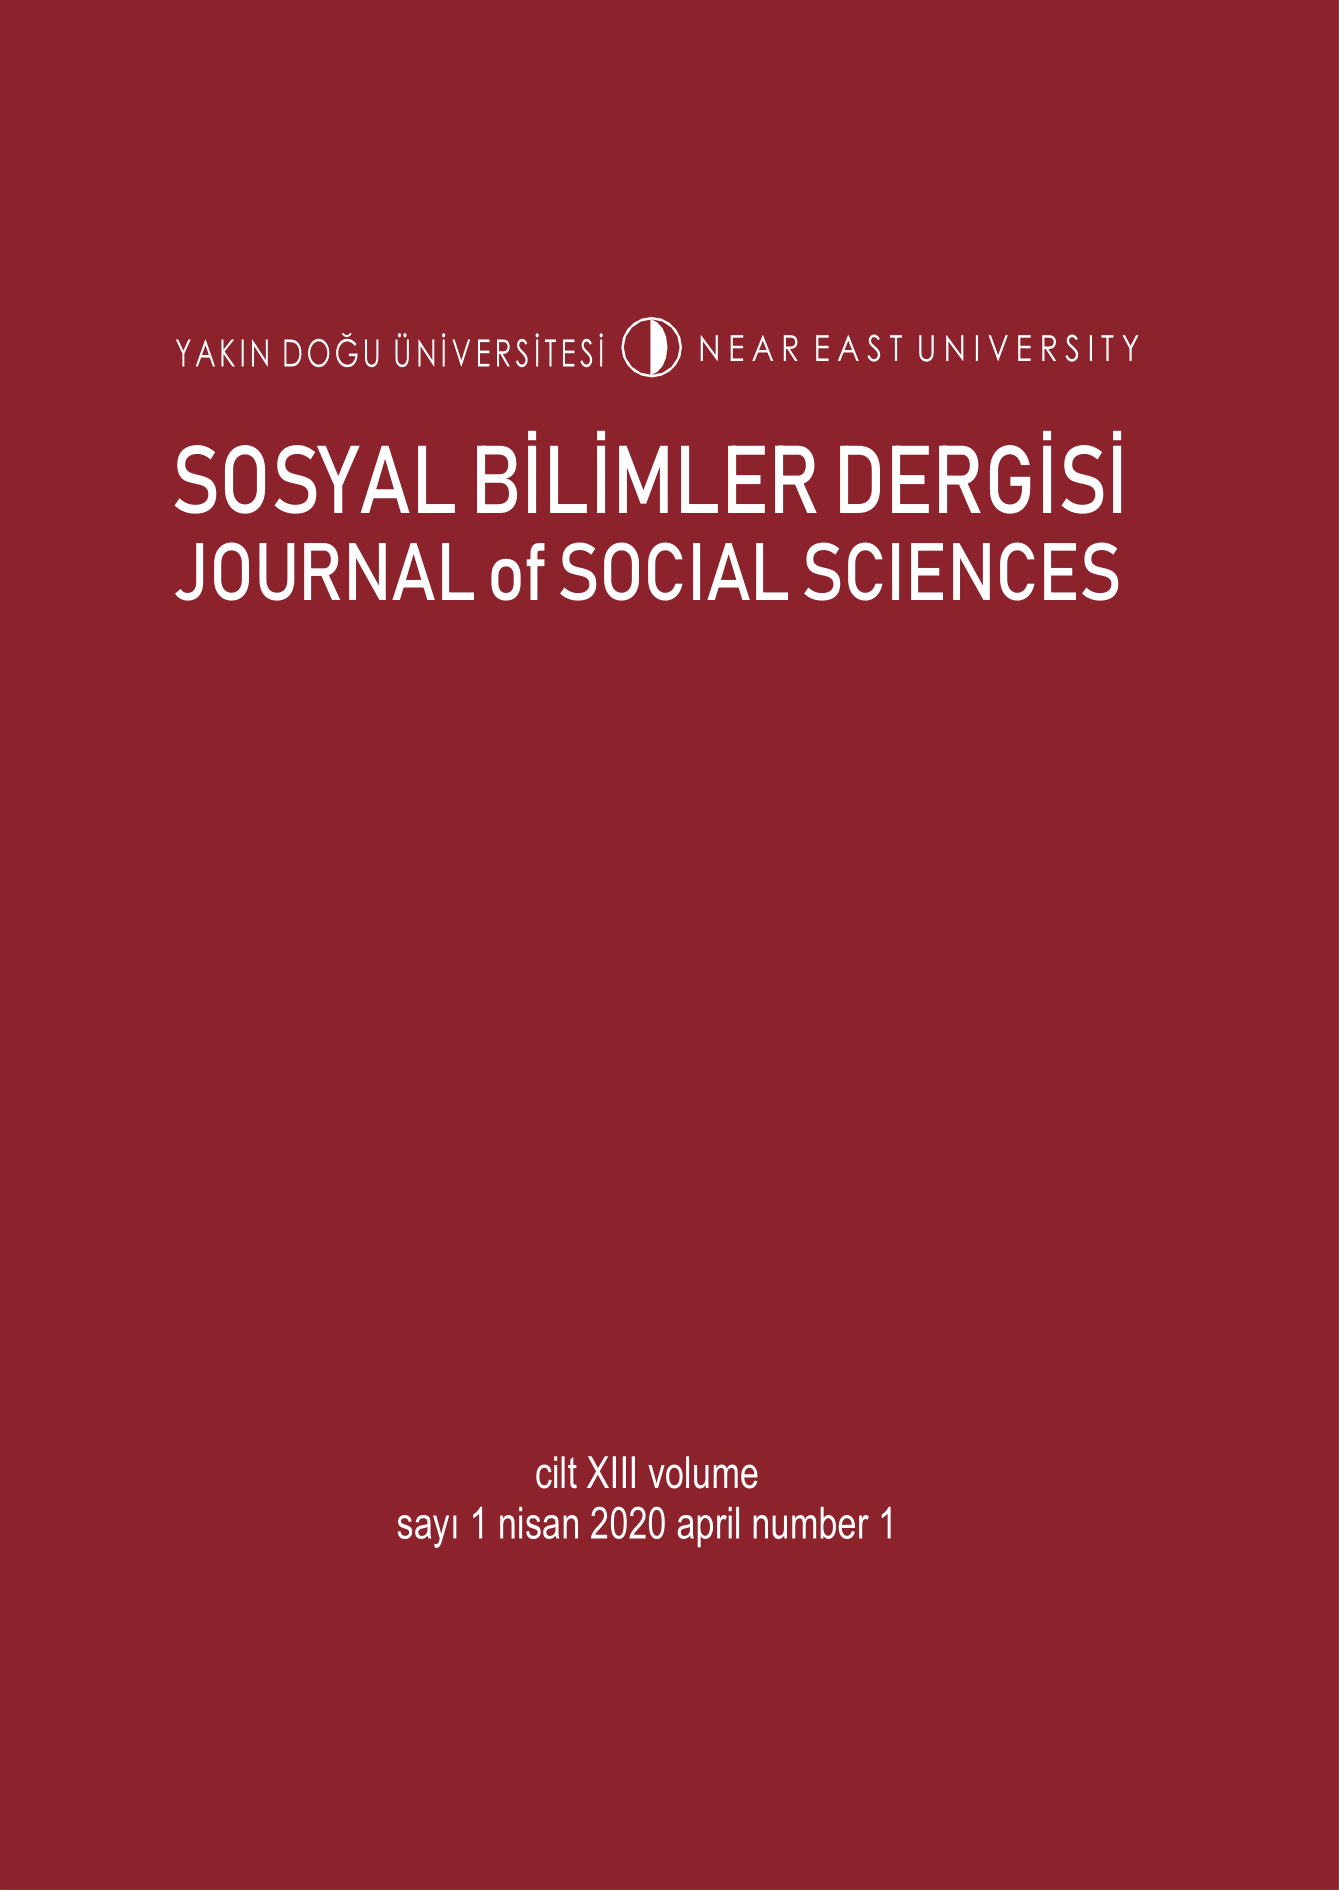 					Cilt 13 Sayı 1 (2020): Yakın Doğu Üniversitesi Sosyal Bilimler Dergisi Gör
				